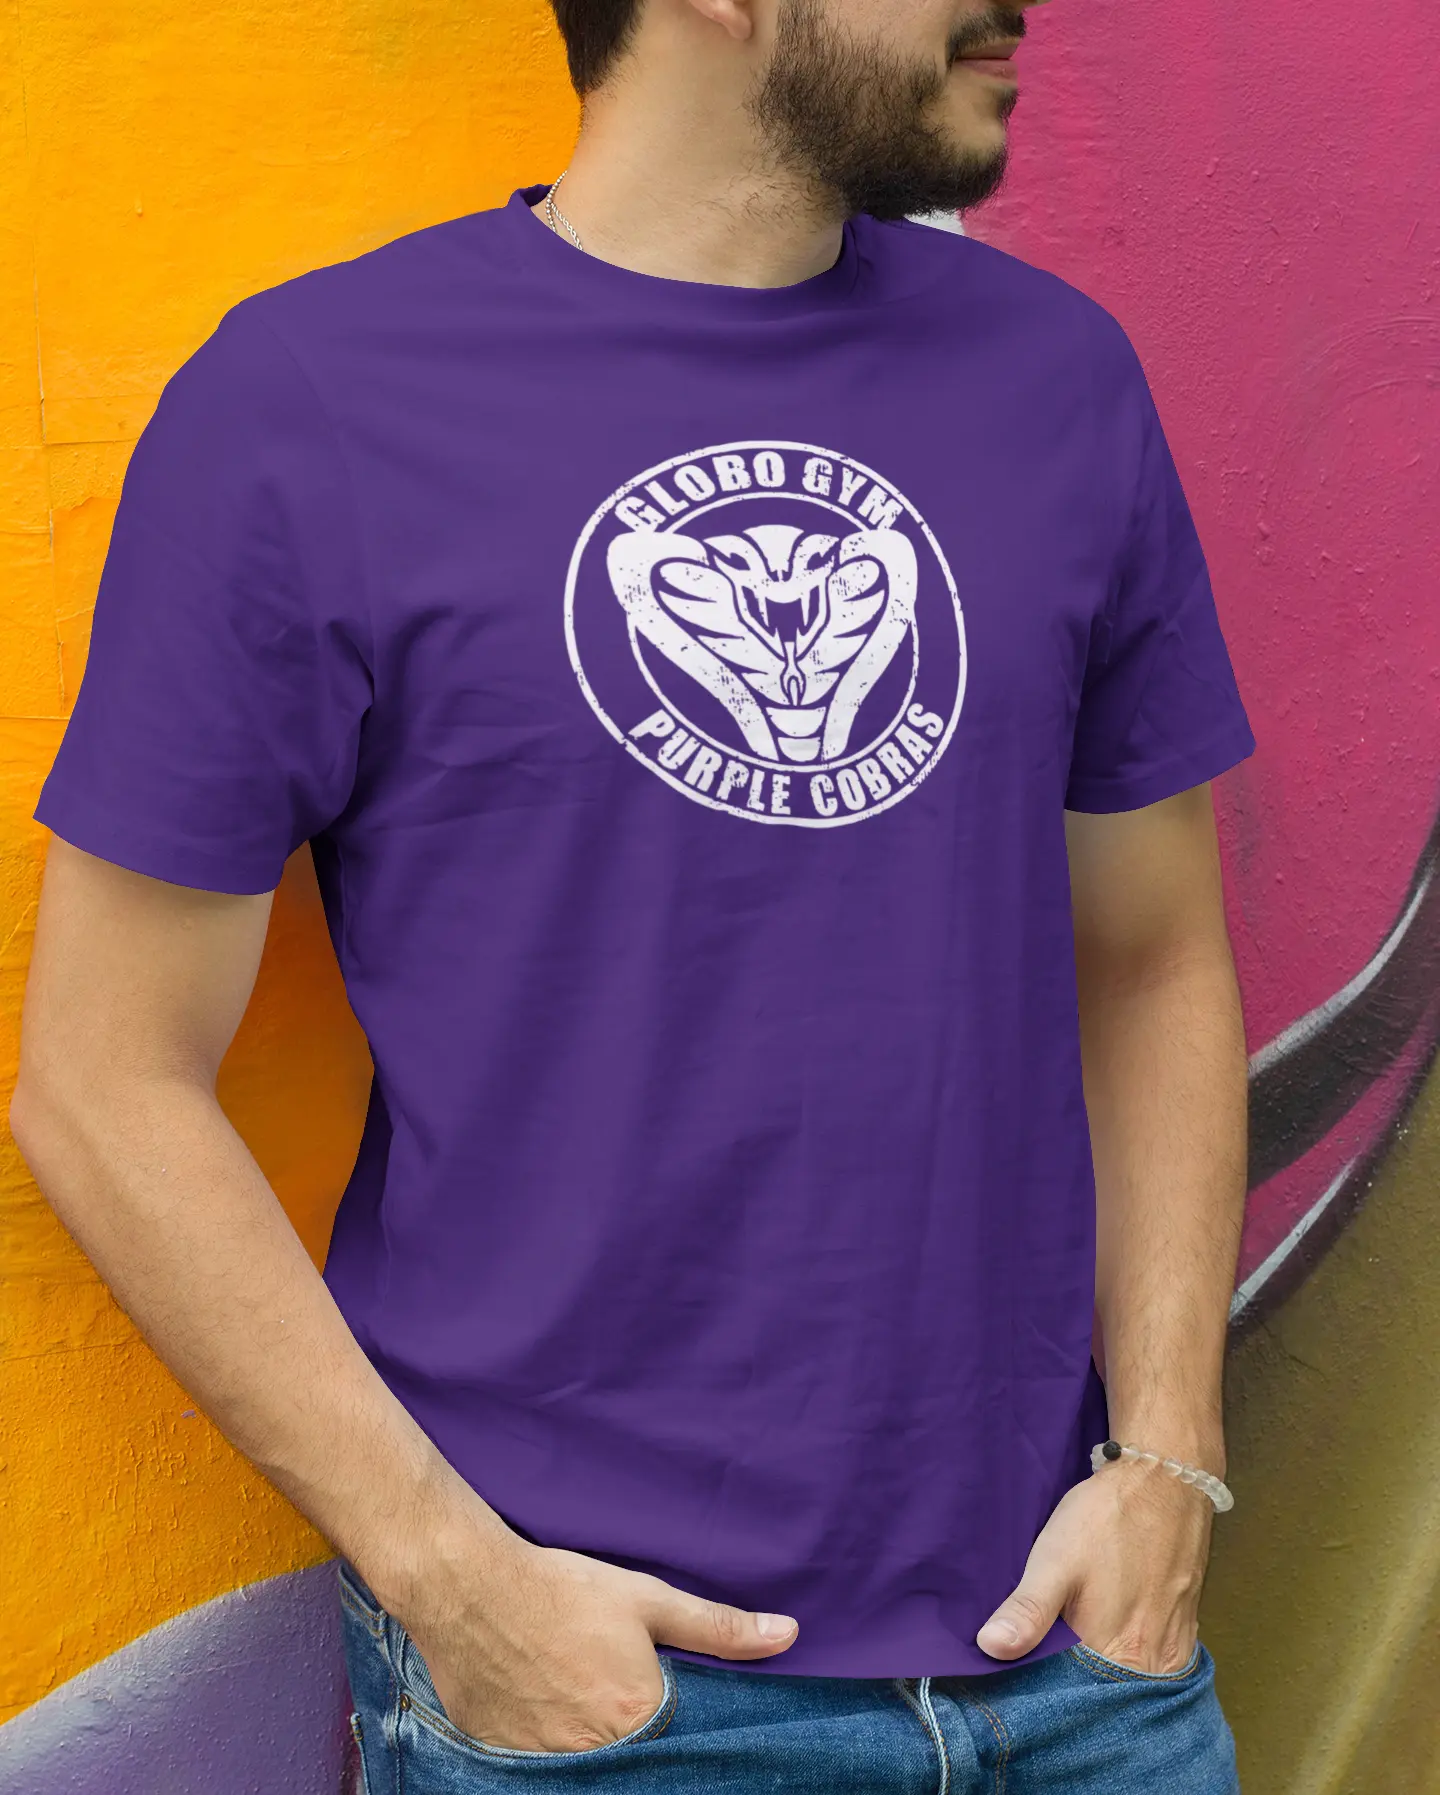 Globo Gym Purple Cobras Tshirt - Donkey Tees